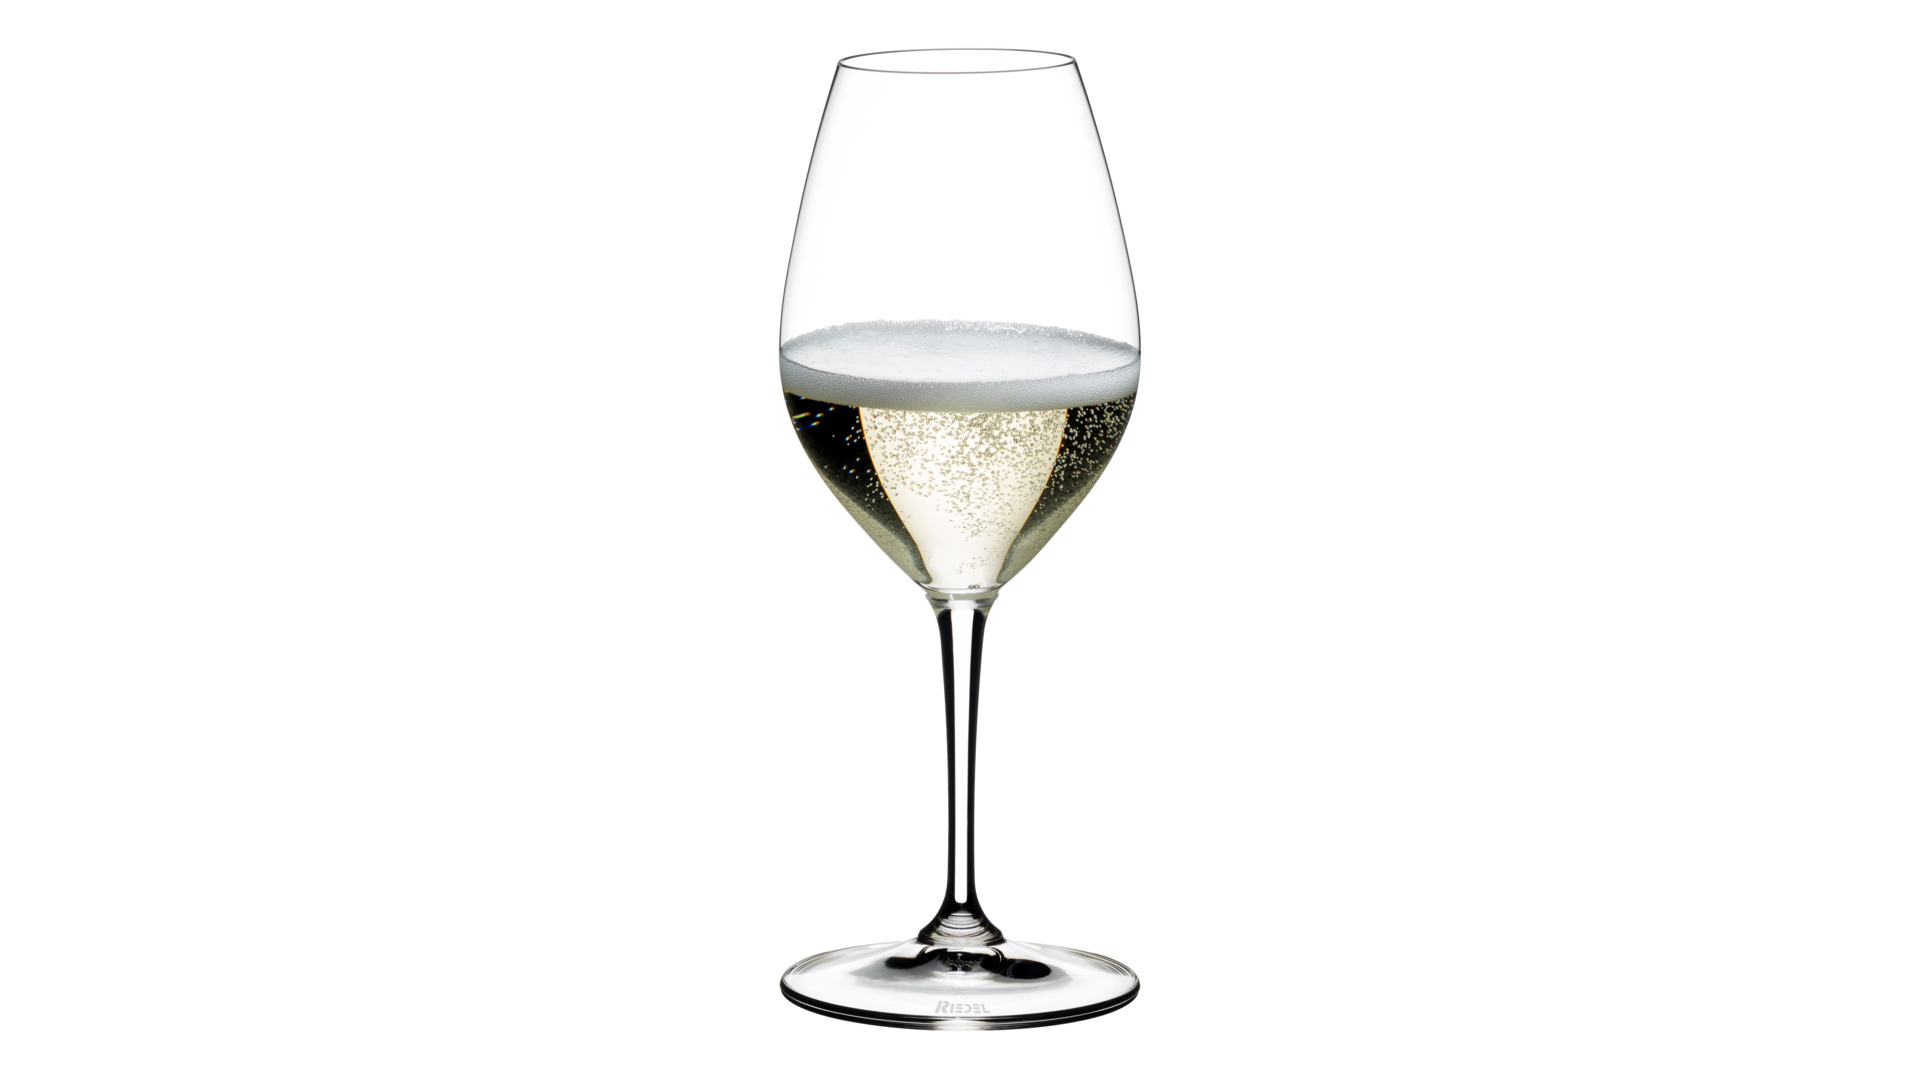 Набор бокалов для шампанского Riedel Vinum 445 мл, 2 шт, стекло хрустальное